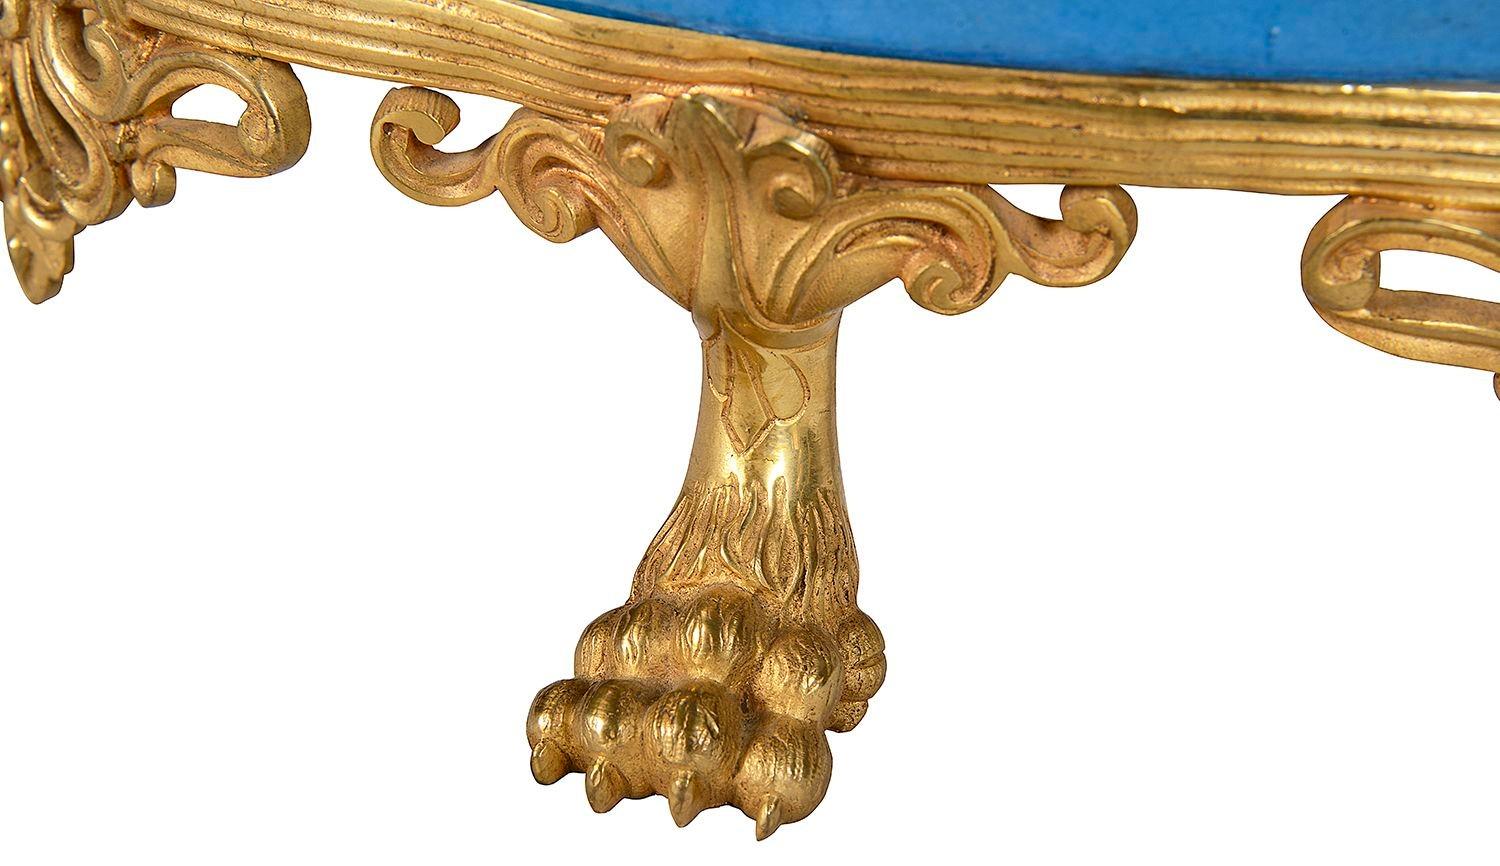 Eine gute Qualität des späten 19. Jahrhunderts Französisch Sèvres-Stil Porzellan comport, mit einem türkisfarbenen Boden mit einem Einsatz handgemalten Panel zeigt eine romanische Szene der umwerbenden Paare, mit vergoldeten Bordüren und Ormolu